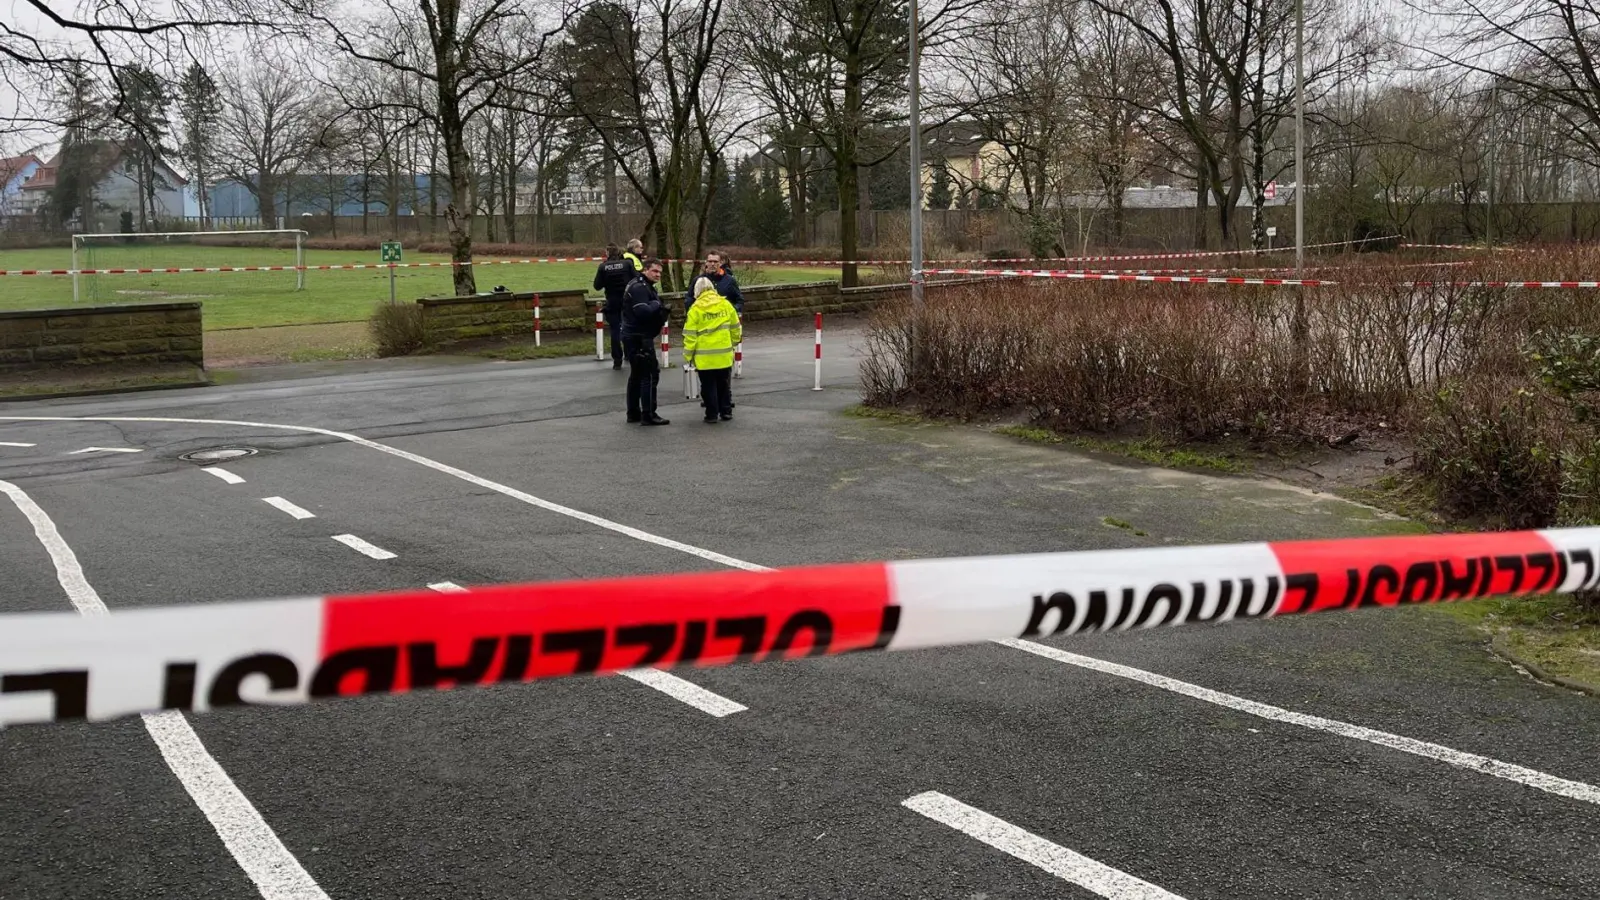 Polizeiabsperrung am Fundort eines Neugeborenen unweit eines Schulgeländes in Bielefeld. (Foto: Christian Müller/Westfalennews/dpa)